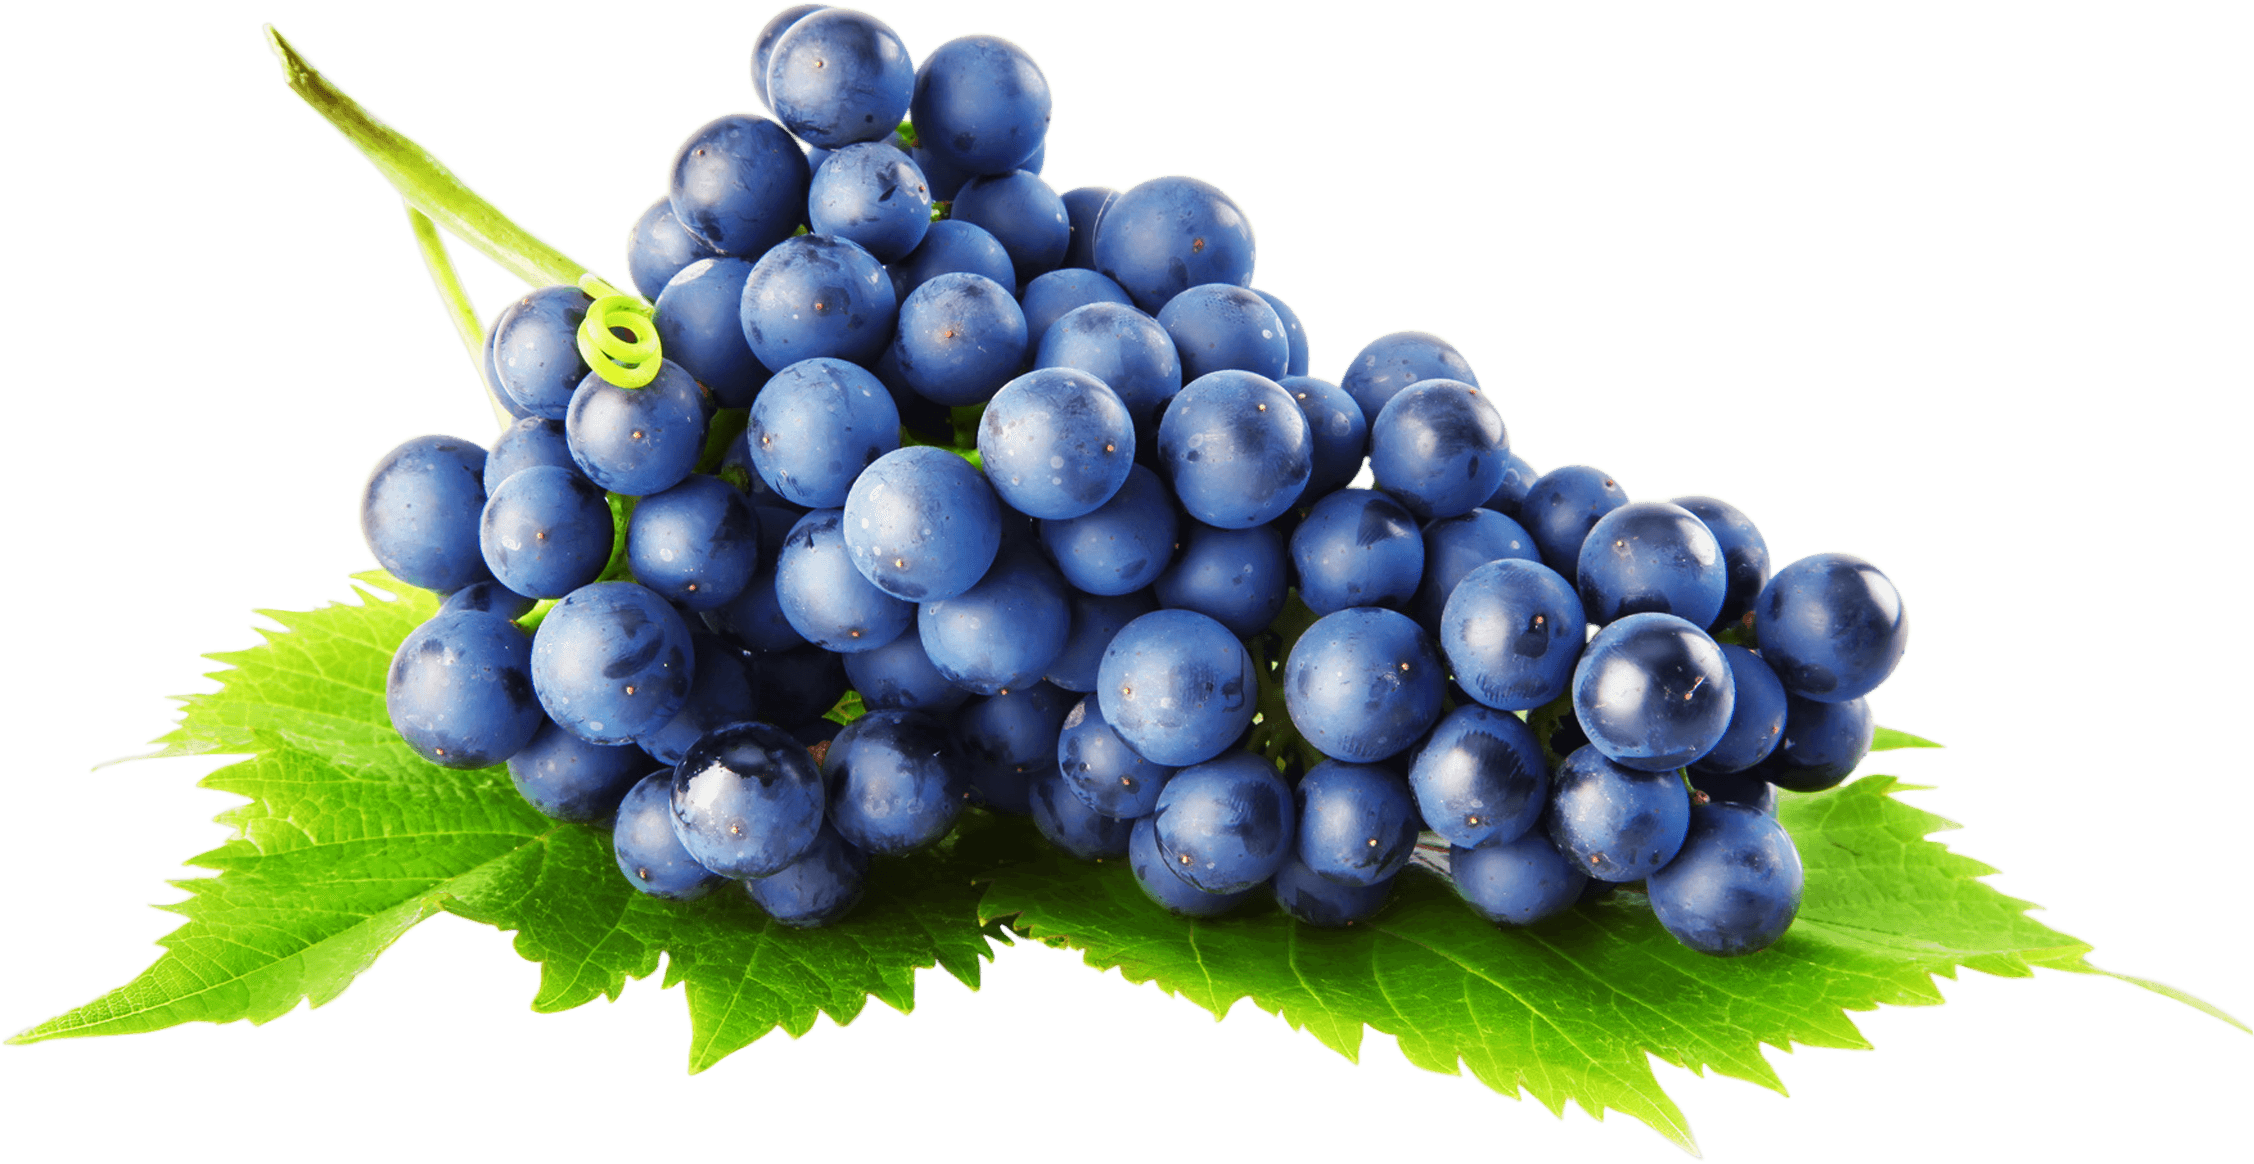 Fondo de imagen de uvas negras PNG